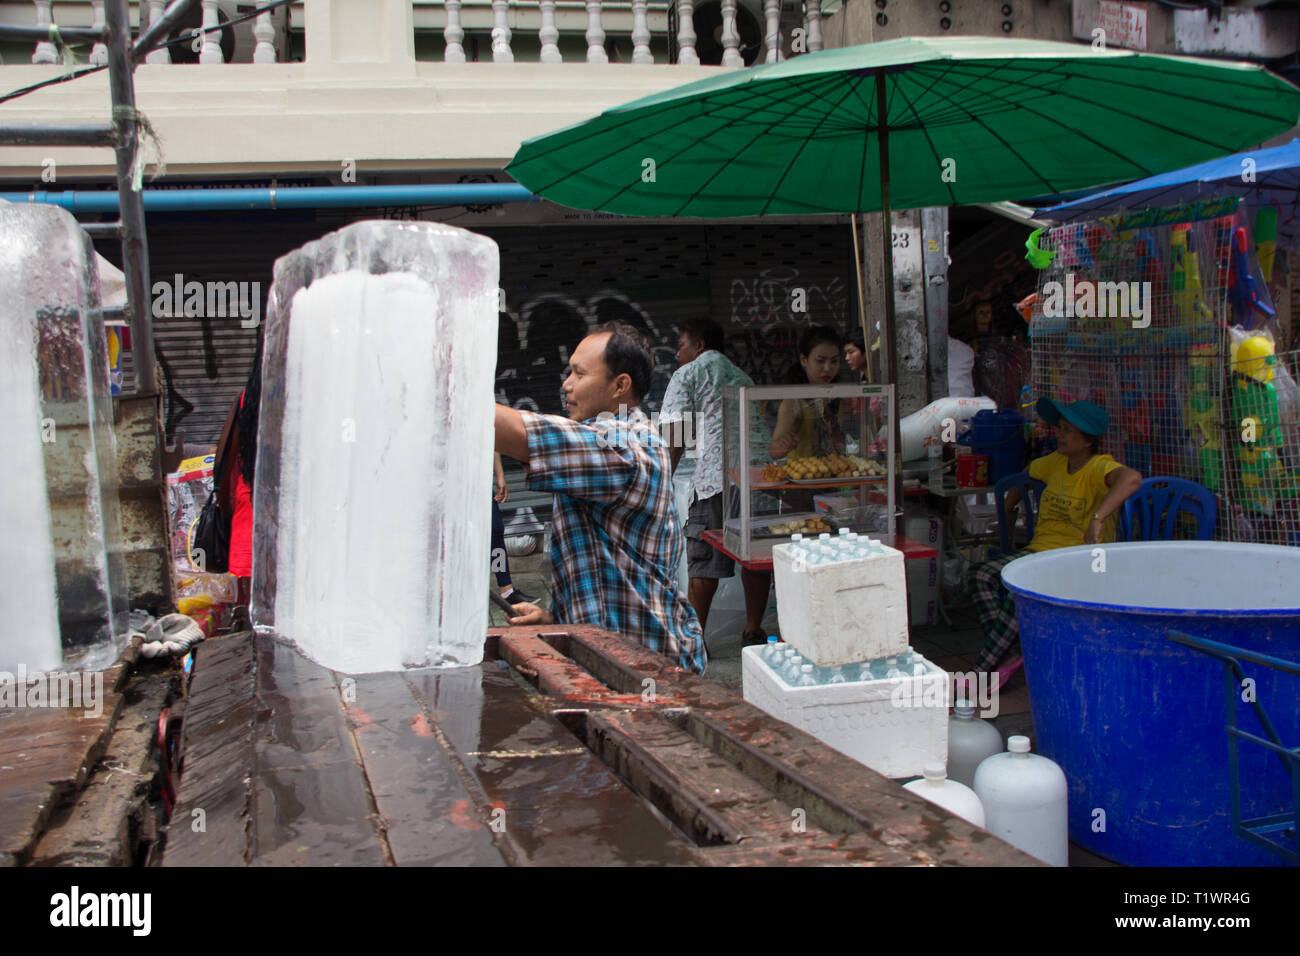 Travailleur thaïlandais s'occupe d'immenses blocs de glace à Khao San Road Bangkok, Thaïlande Banque D'Images